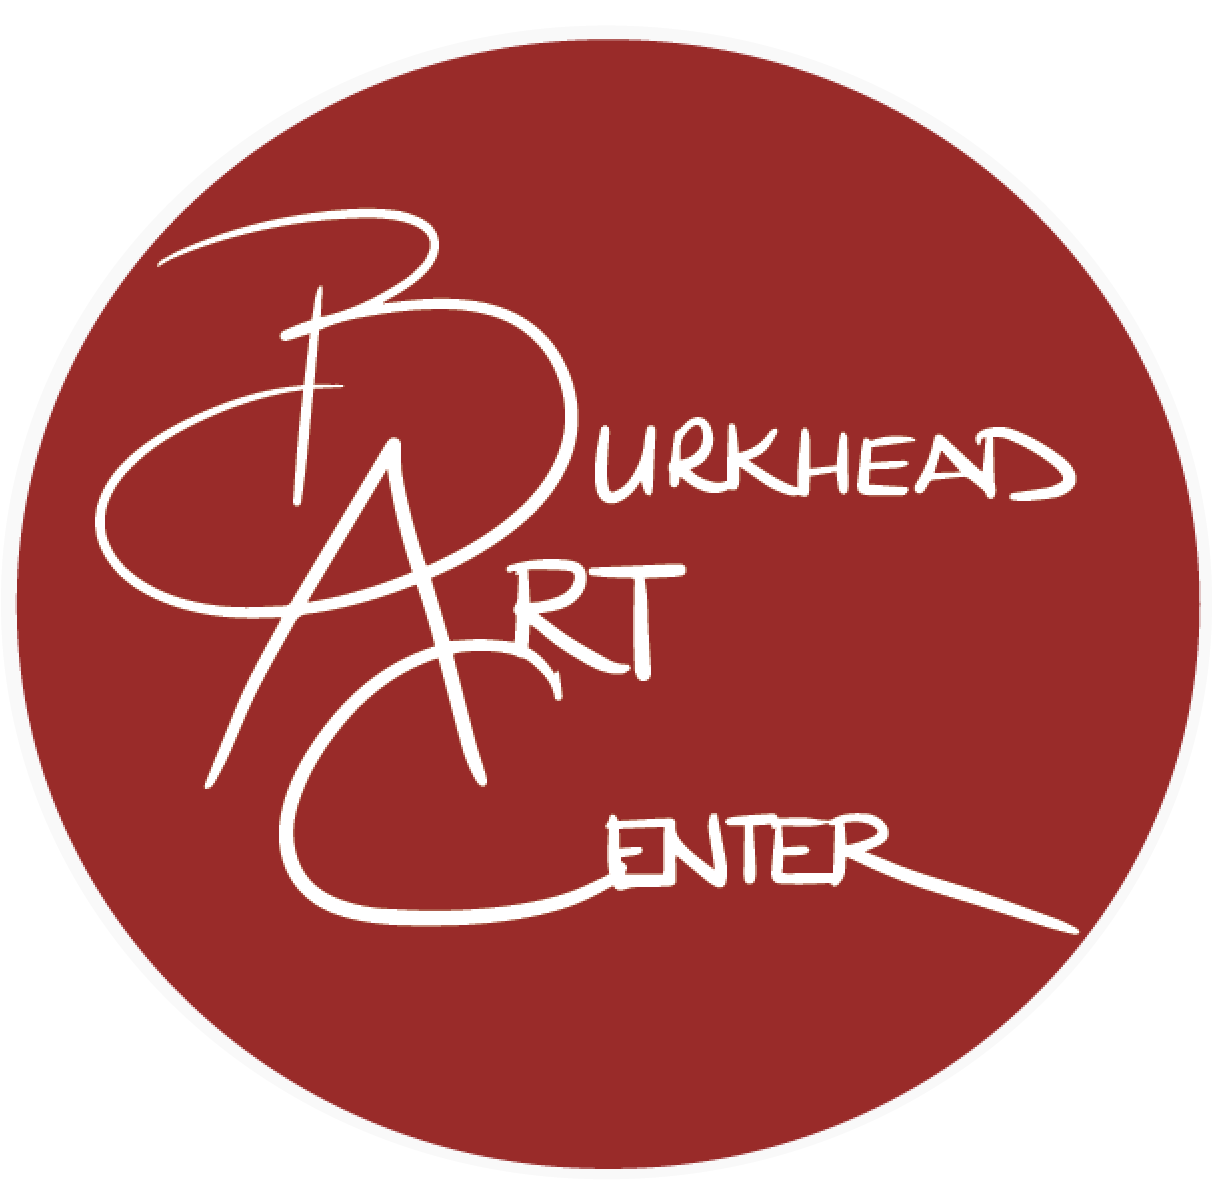 Burkhead Art Center